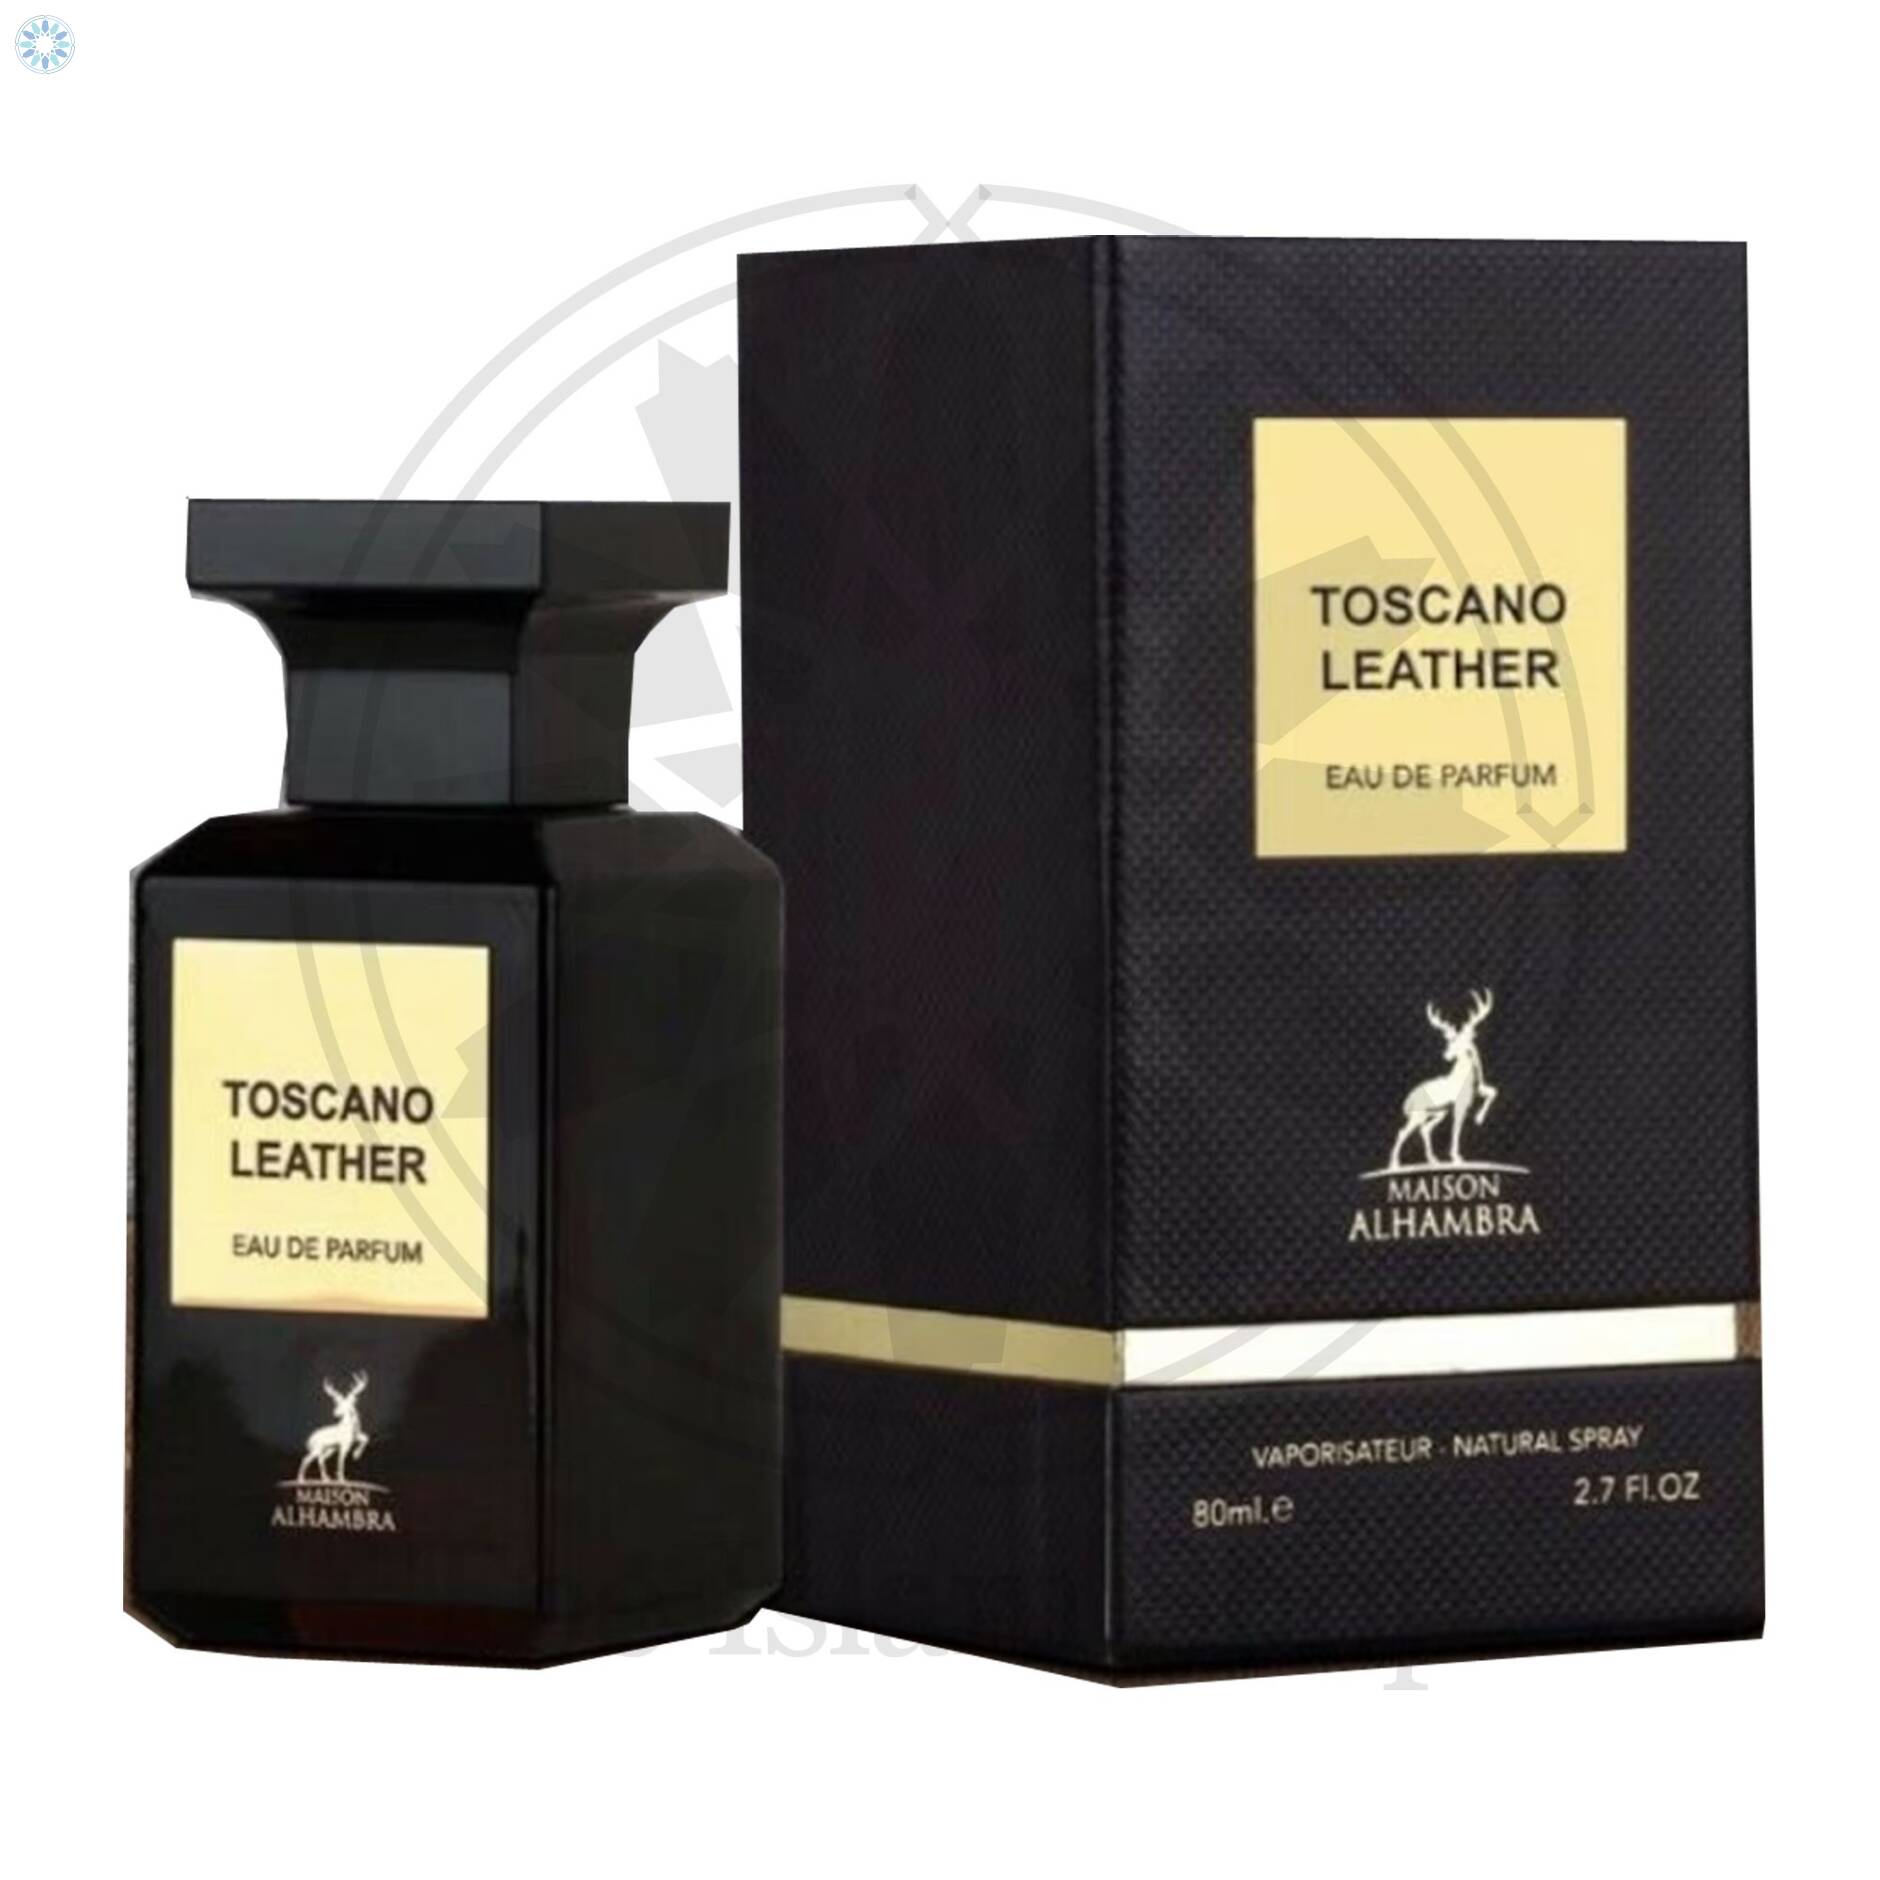 Perfumes › Eau De Parfum › Toscano Leather 80ml EDP (Eau De Parfum) By ...